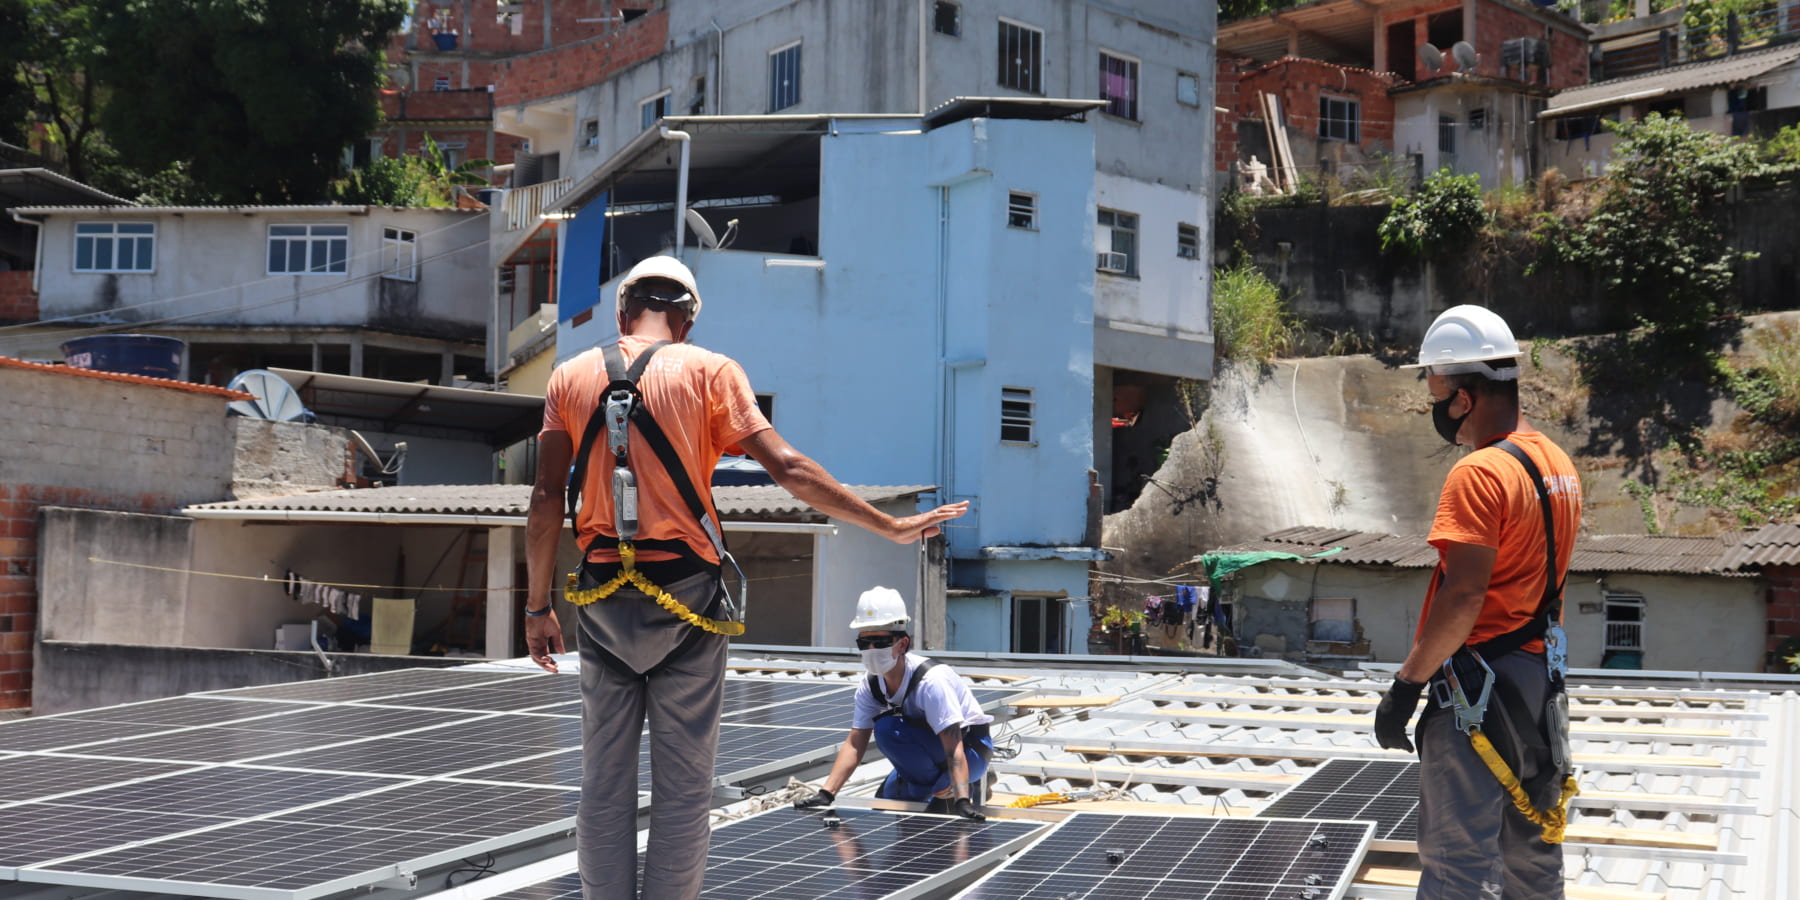 ブラジルのスラム街に設置した太陽光発電パネル「Revolusolar」